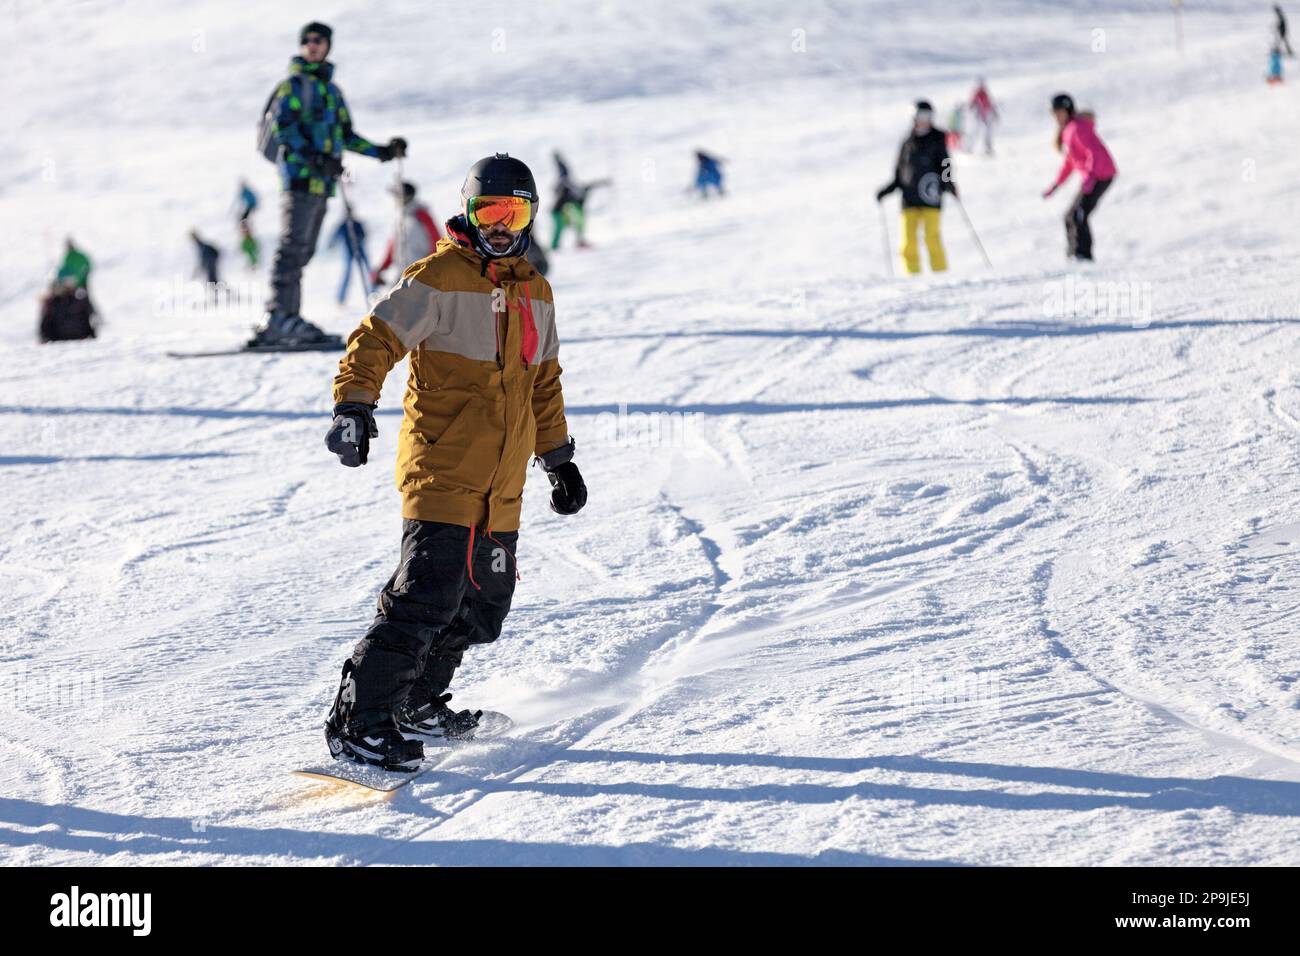 Pas de la Casa, Andorra, Dezember 07 2019: Snowboarder auf der Skipiste von Grandvalira, dem größten Skigebiet in den Pyrenäen und Südeuropa. Stockfoto